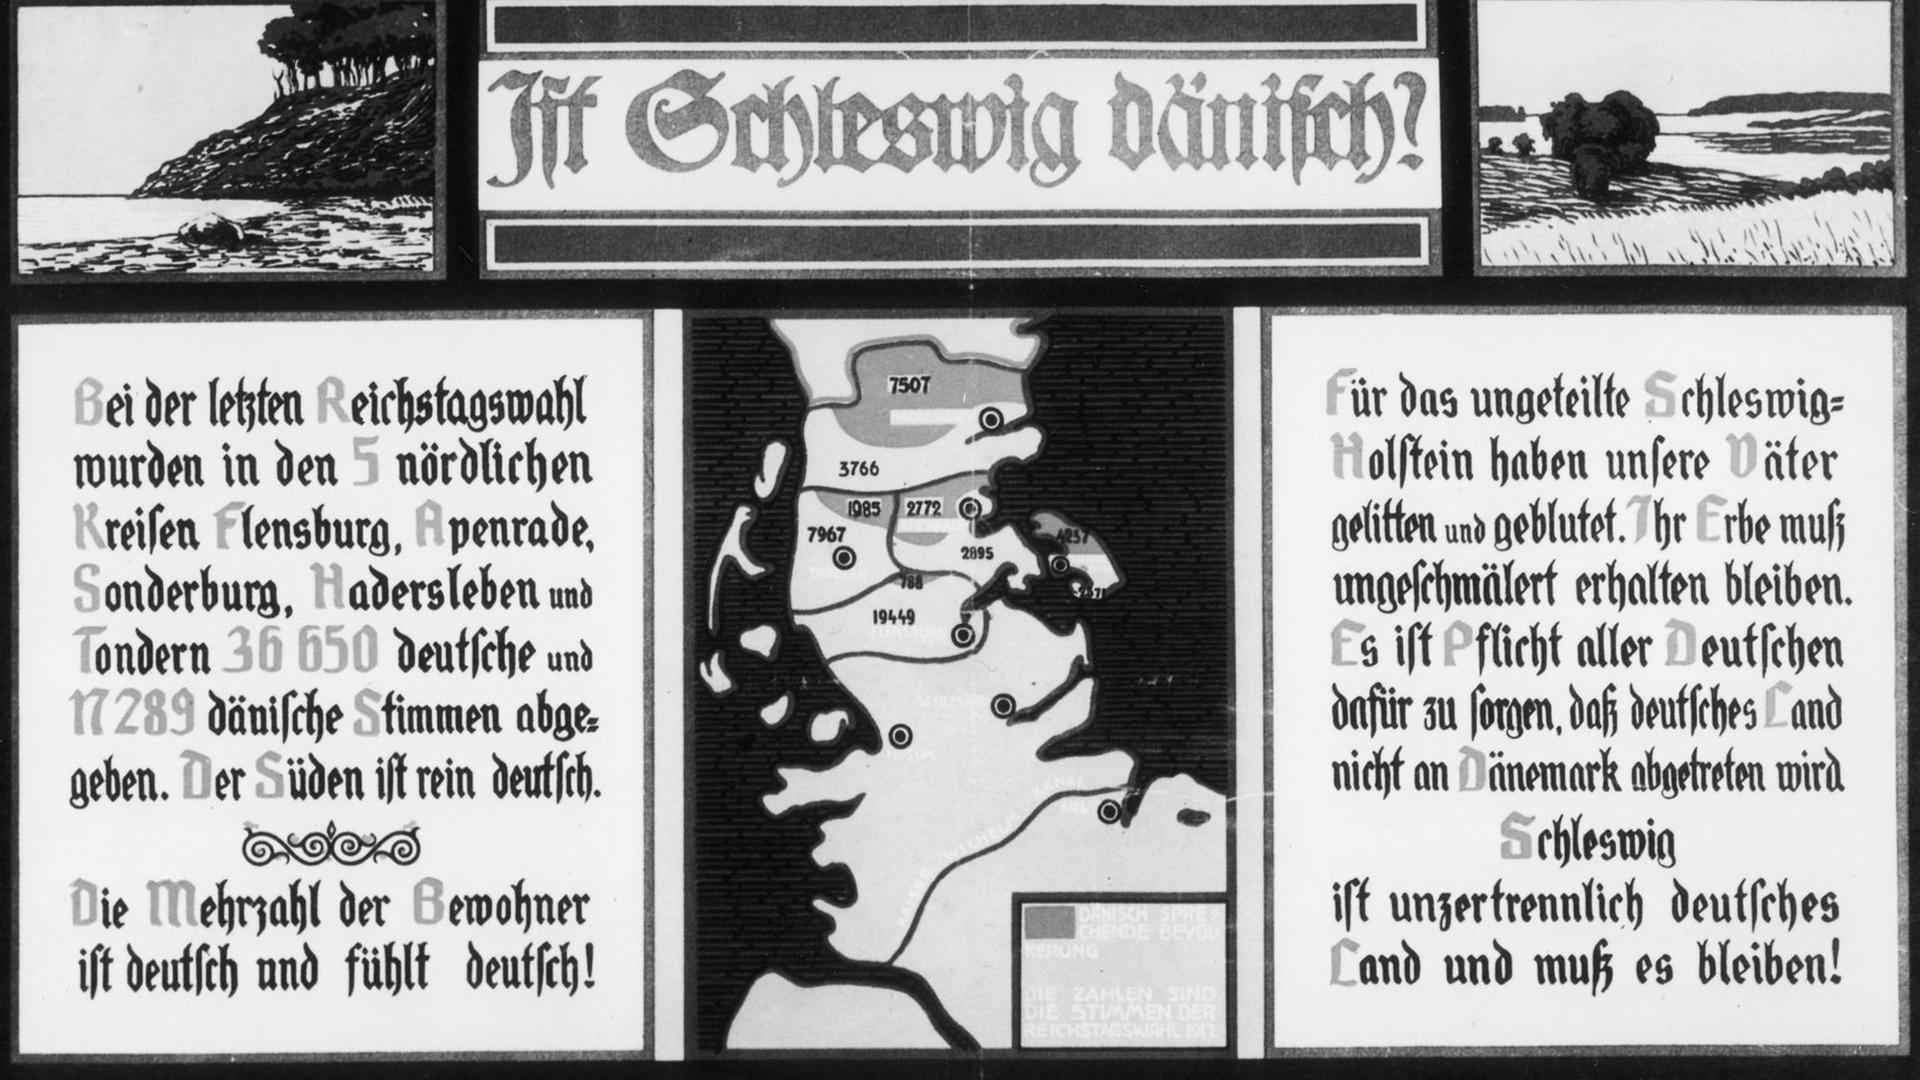 Ist Schleswig dänisch? Schleswig ist deutsch! Entwurf eines Pro-Deutschen Plakats von C. Kreutzfeld aus dem Jahre 1919 über die Volksabstimmung der territorialen Zugehörigkeit Nordschleswigs.